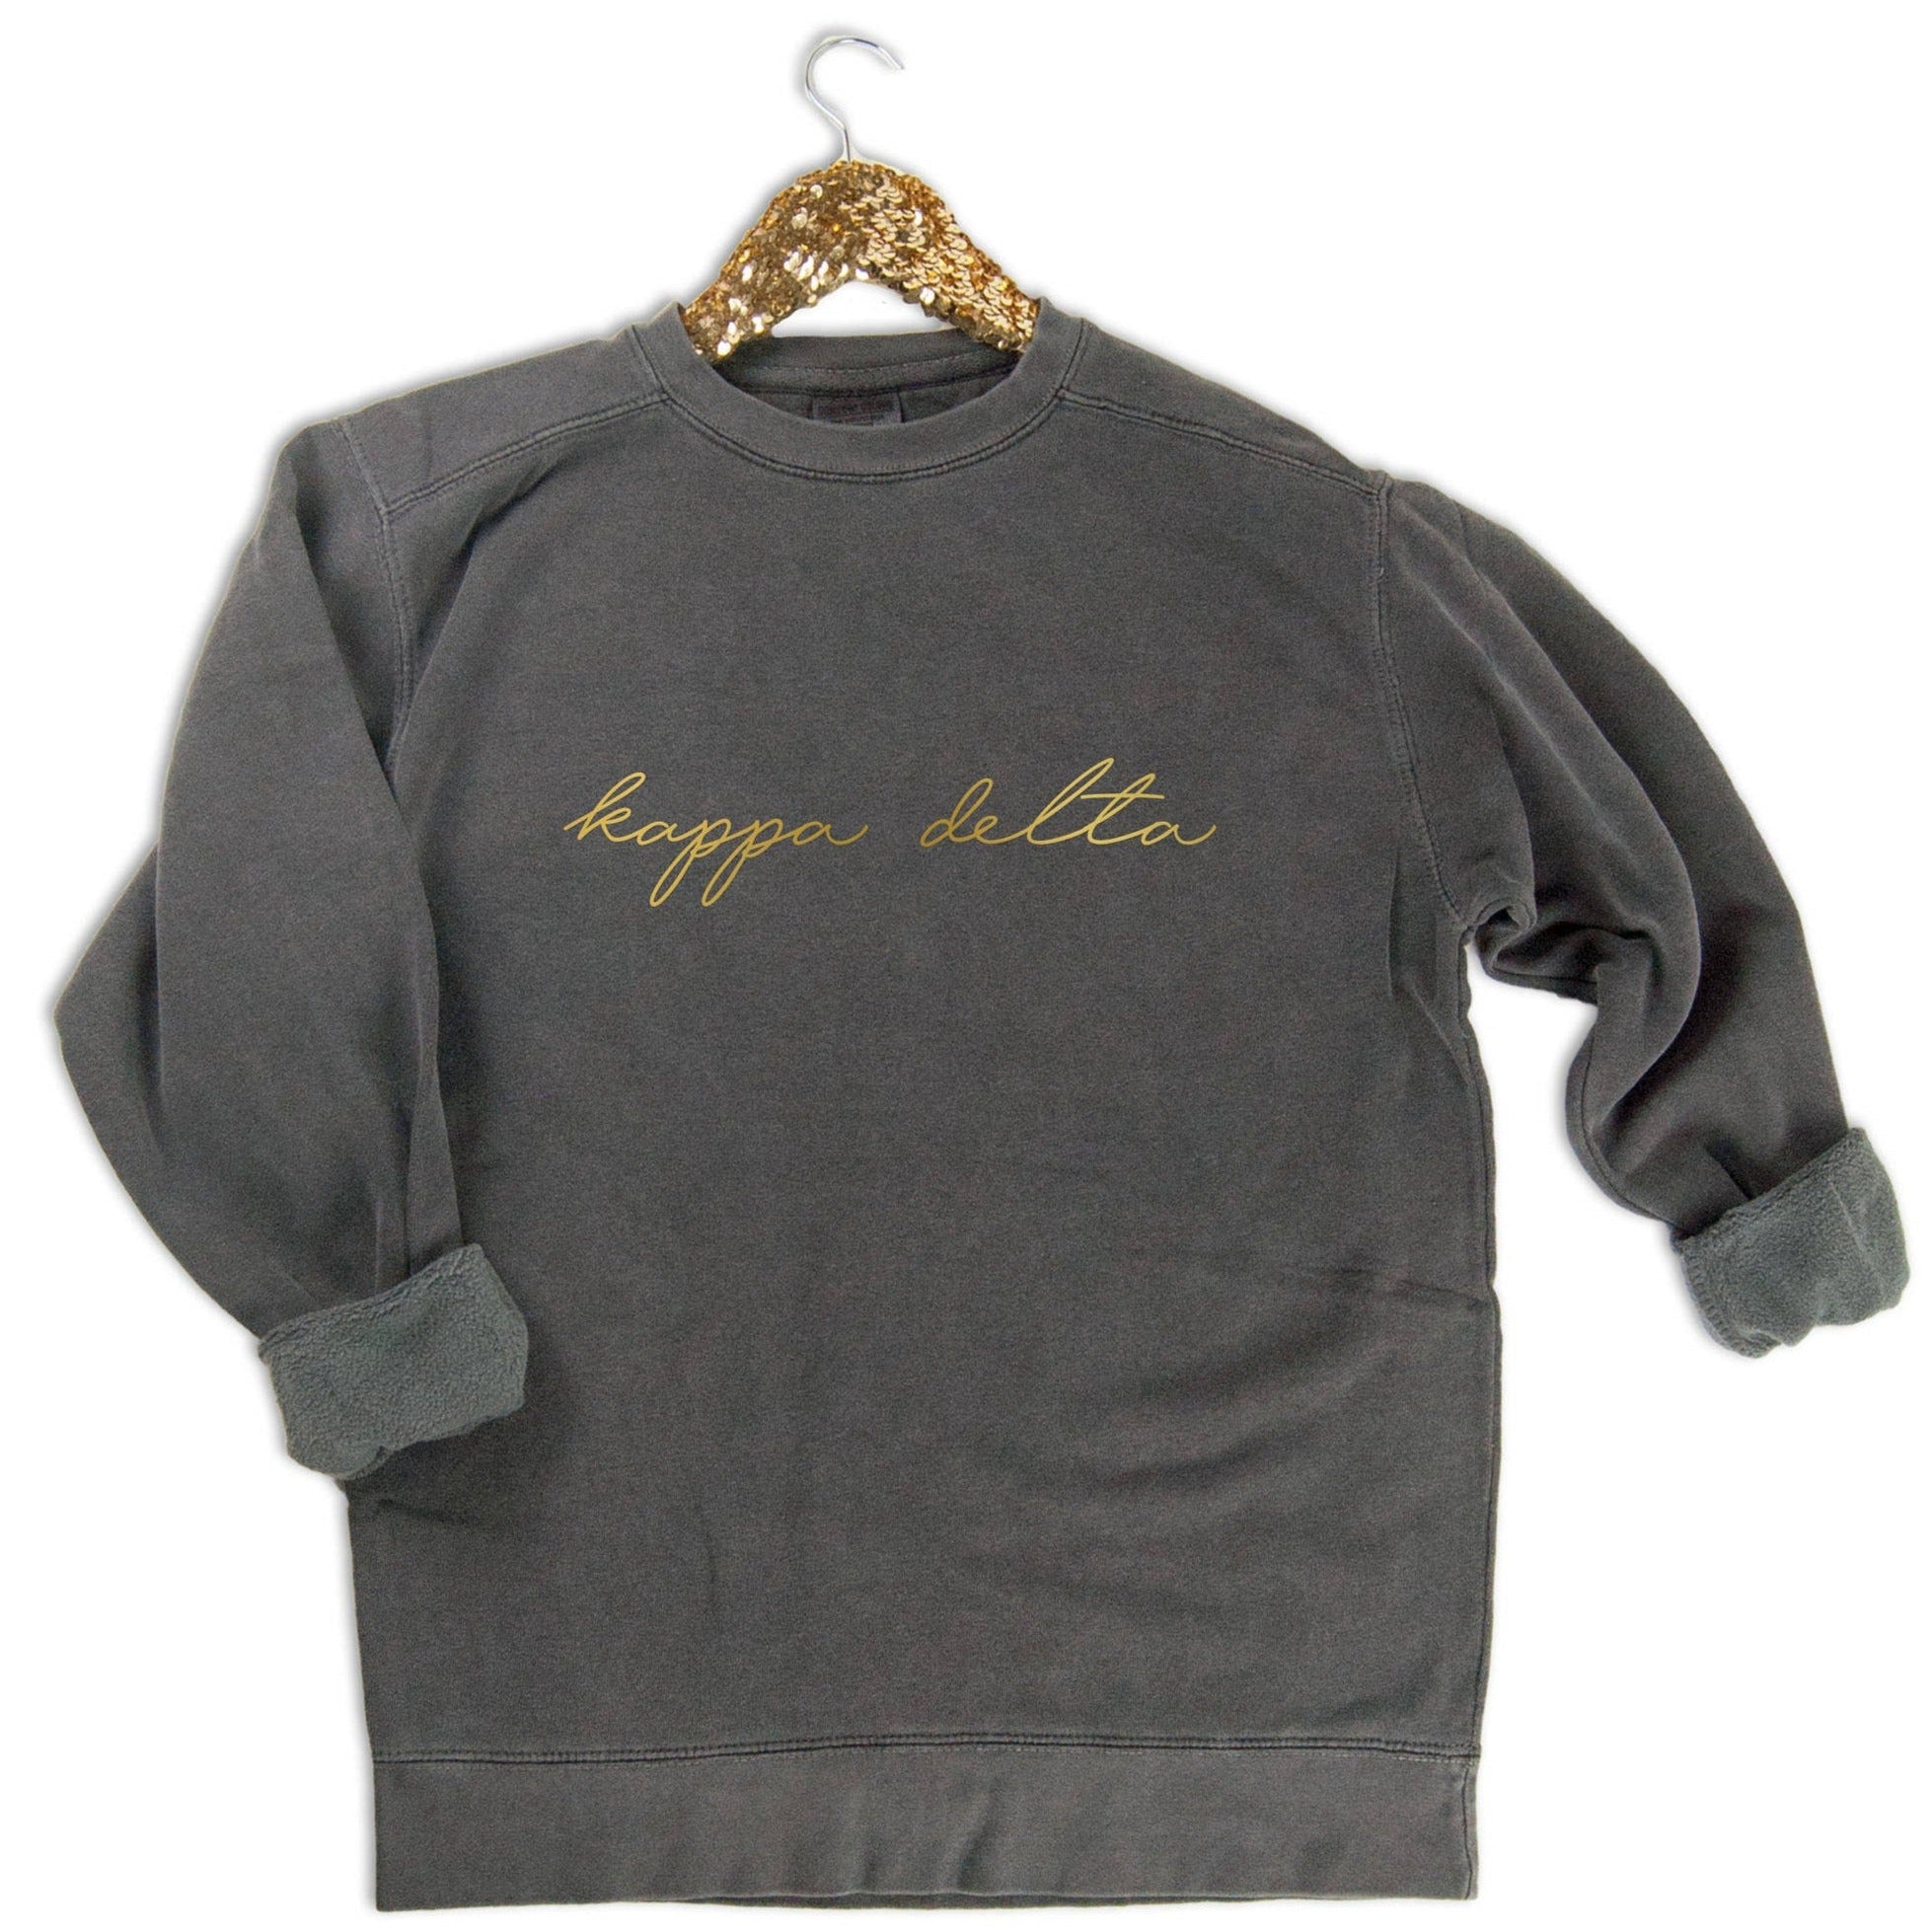 Kappa Delta Gold Script Letters Sweatshirt - Go Greek Chic